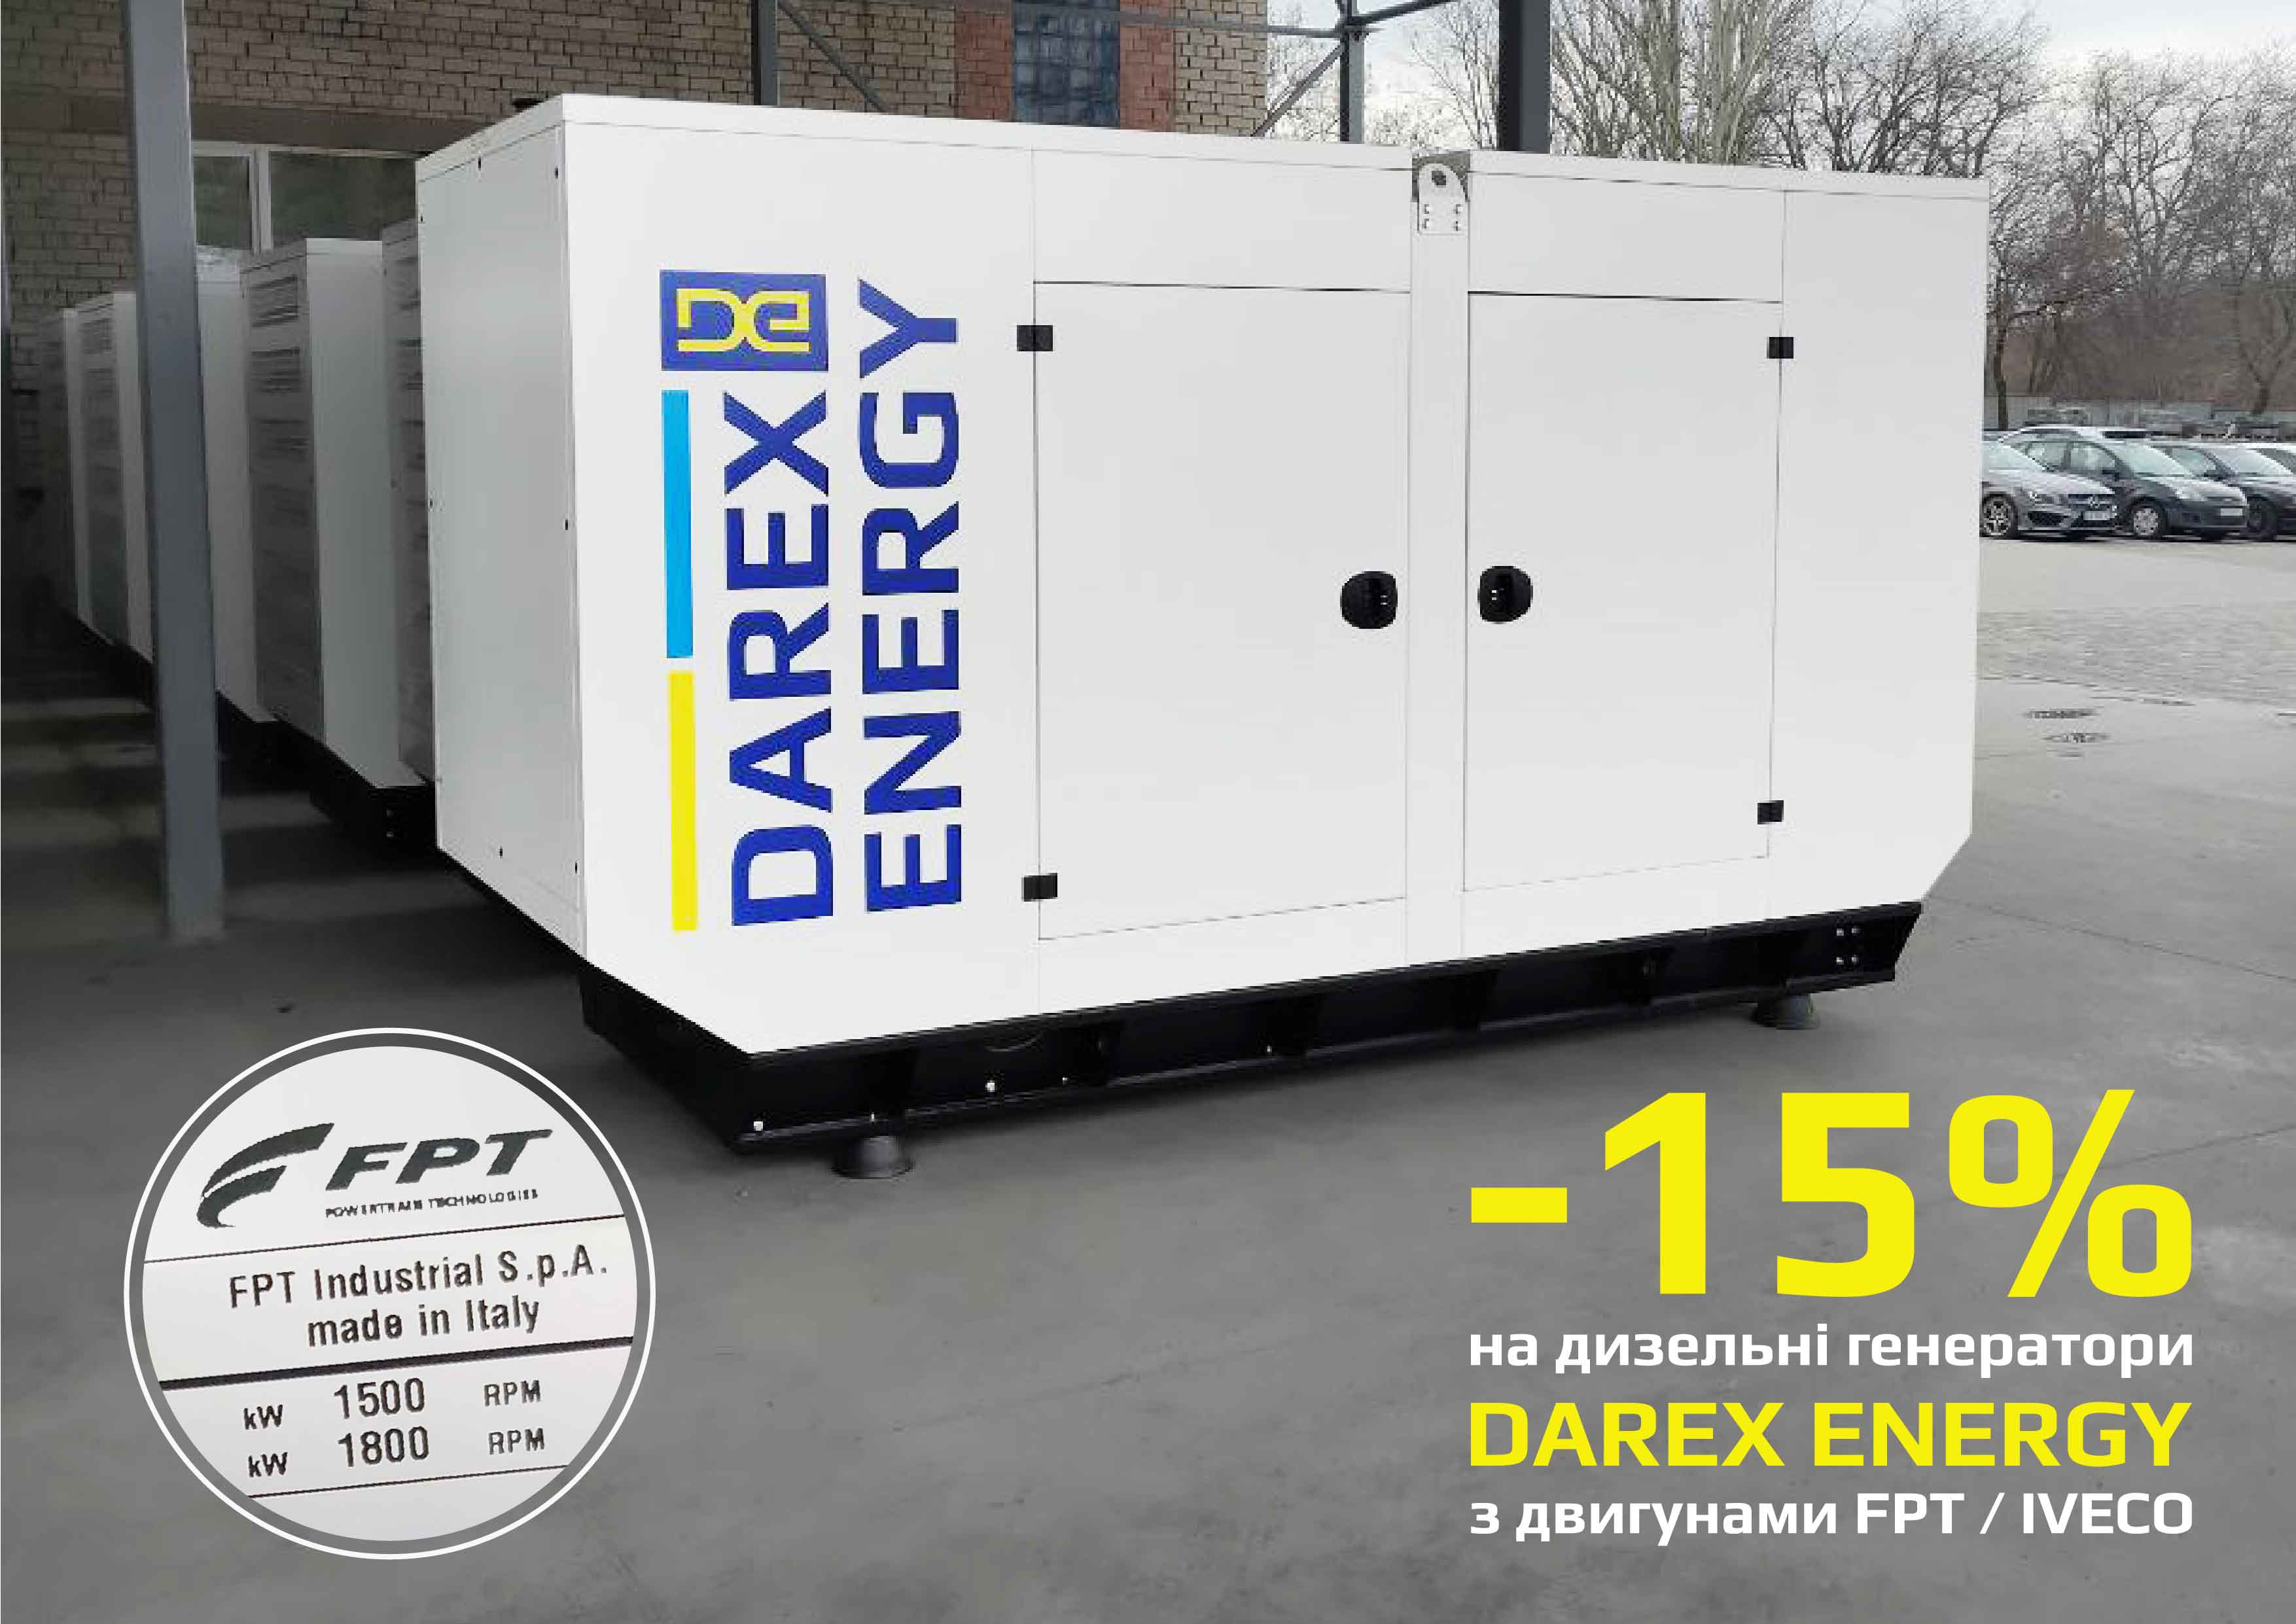 Скидка 15% на дизель-генераторы  «DAREX ENERGY»  з двигателями FPT / IVECO Motors